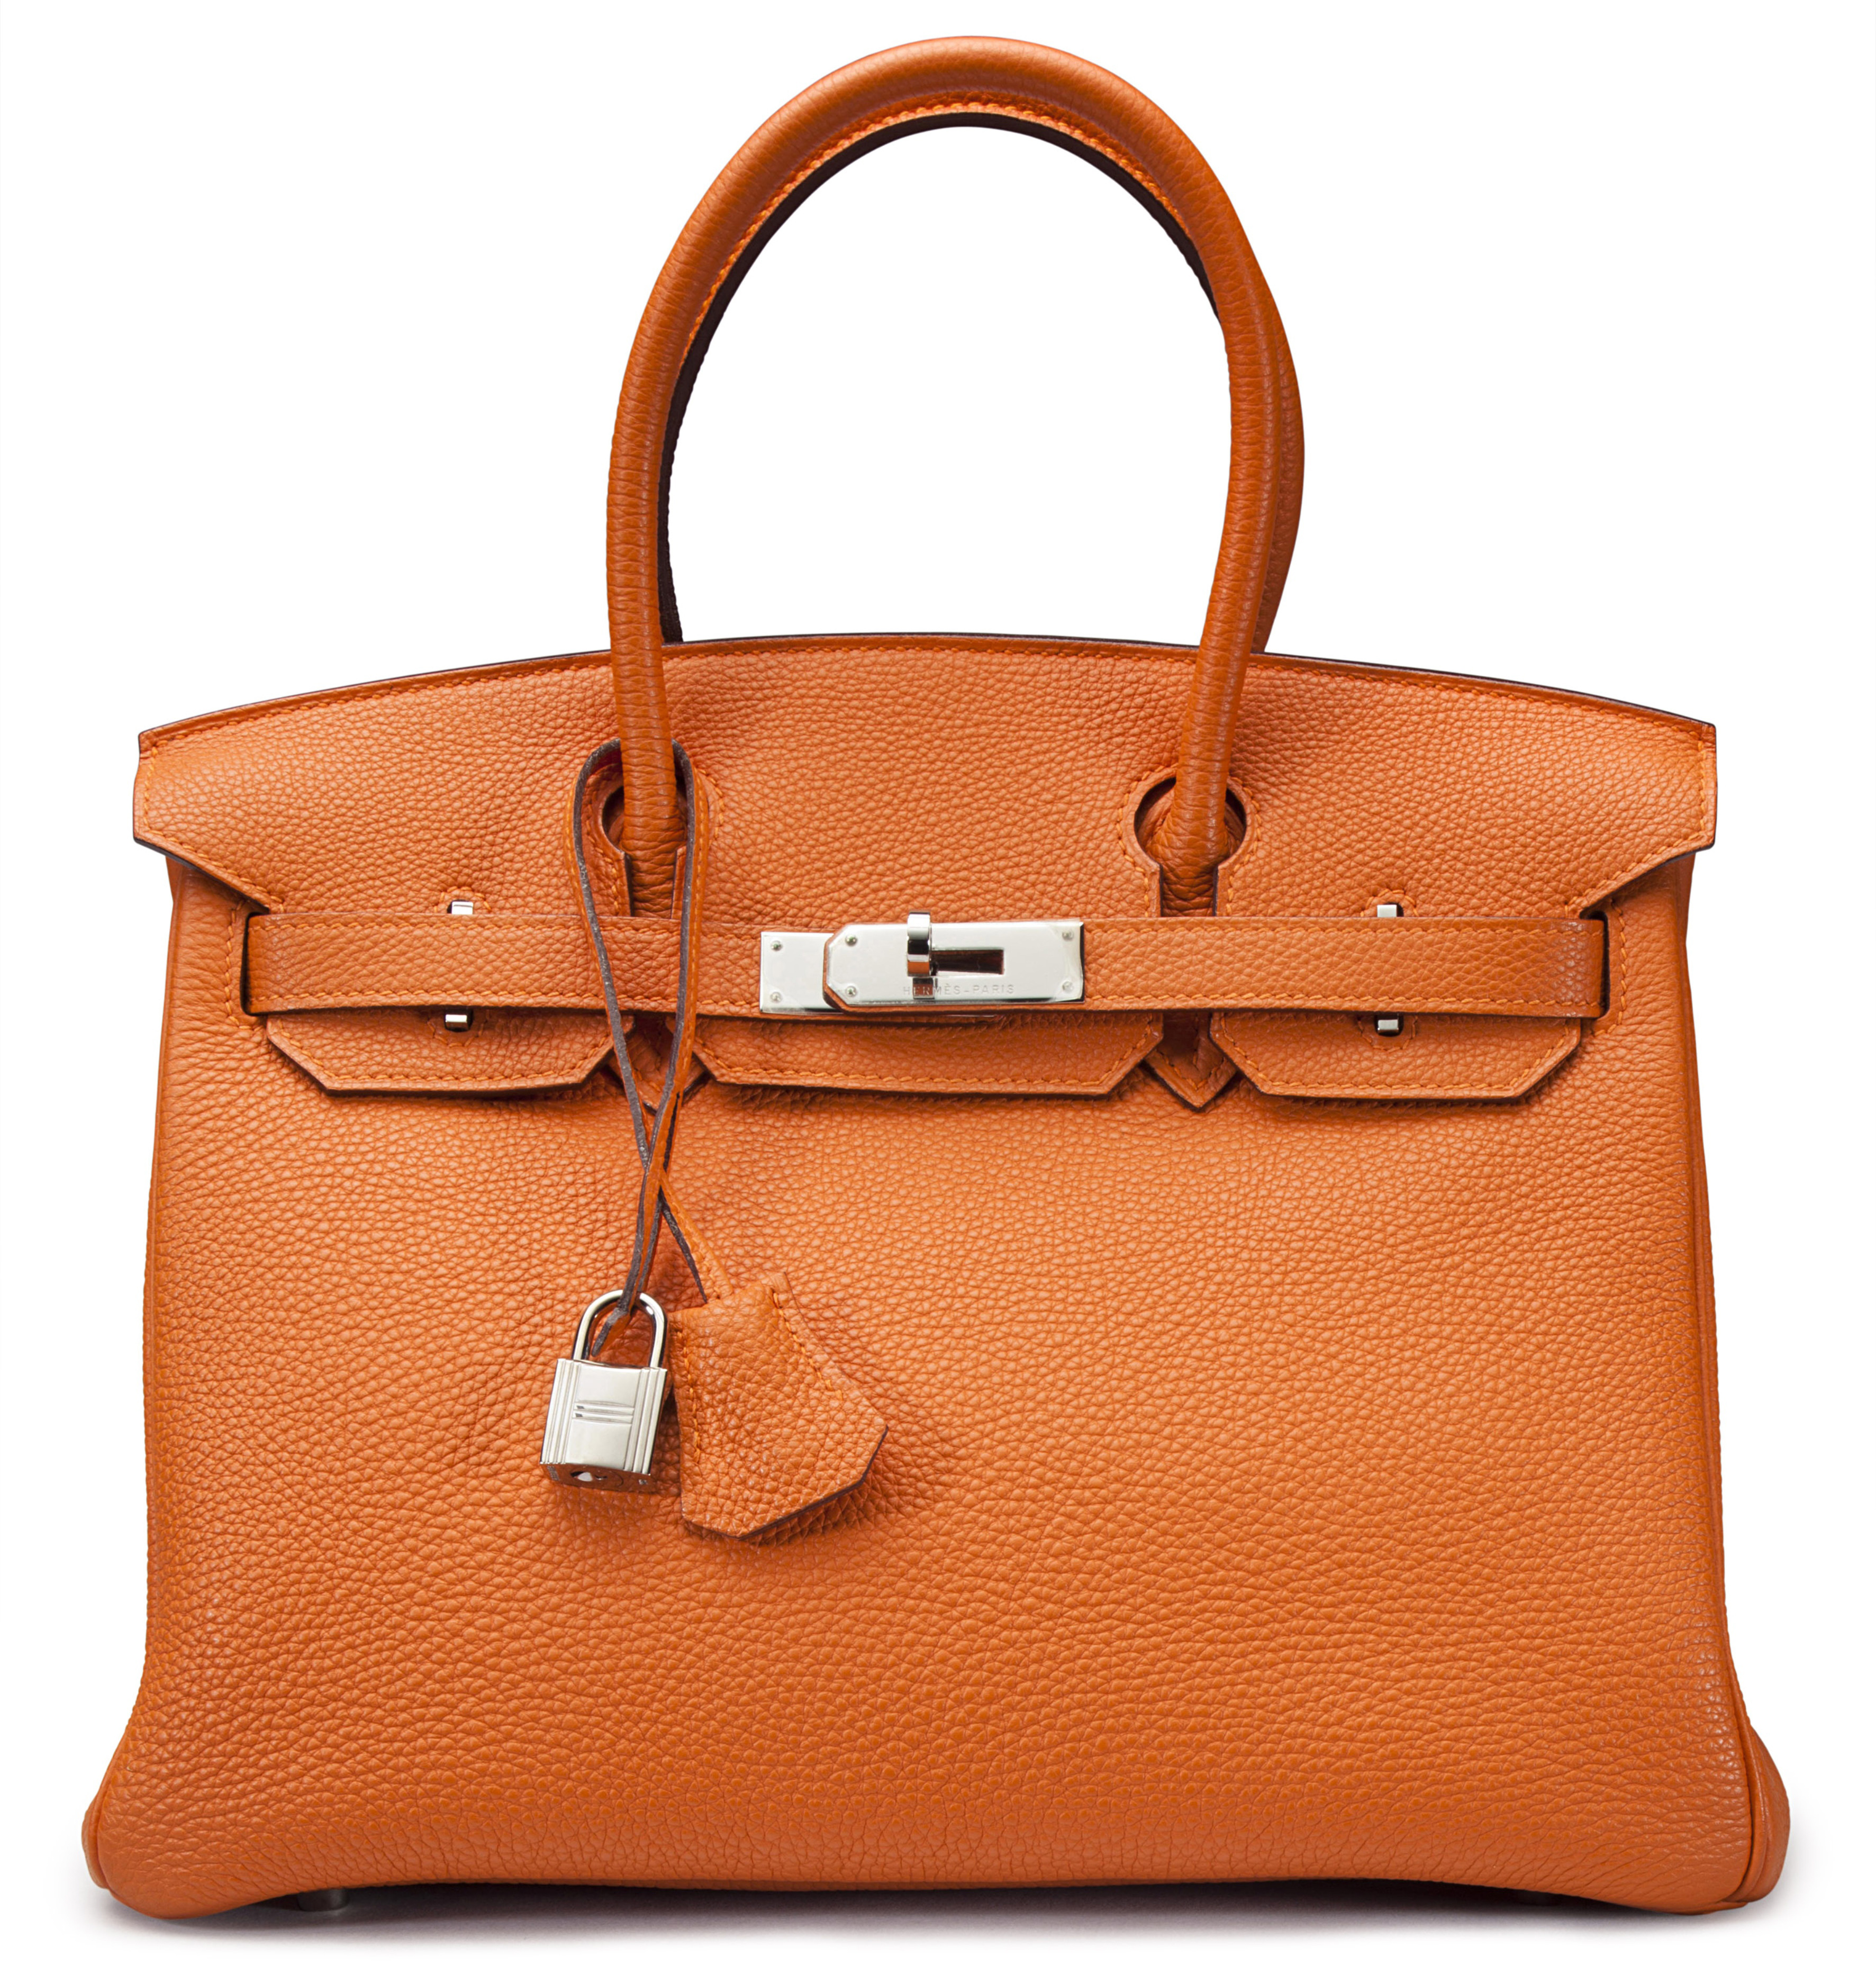 Hermes Birkin Bag Cost New - Mina Suzann